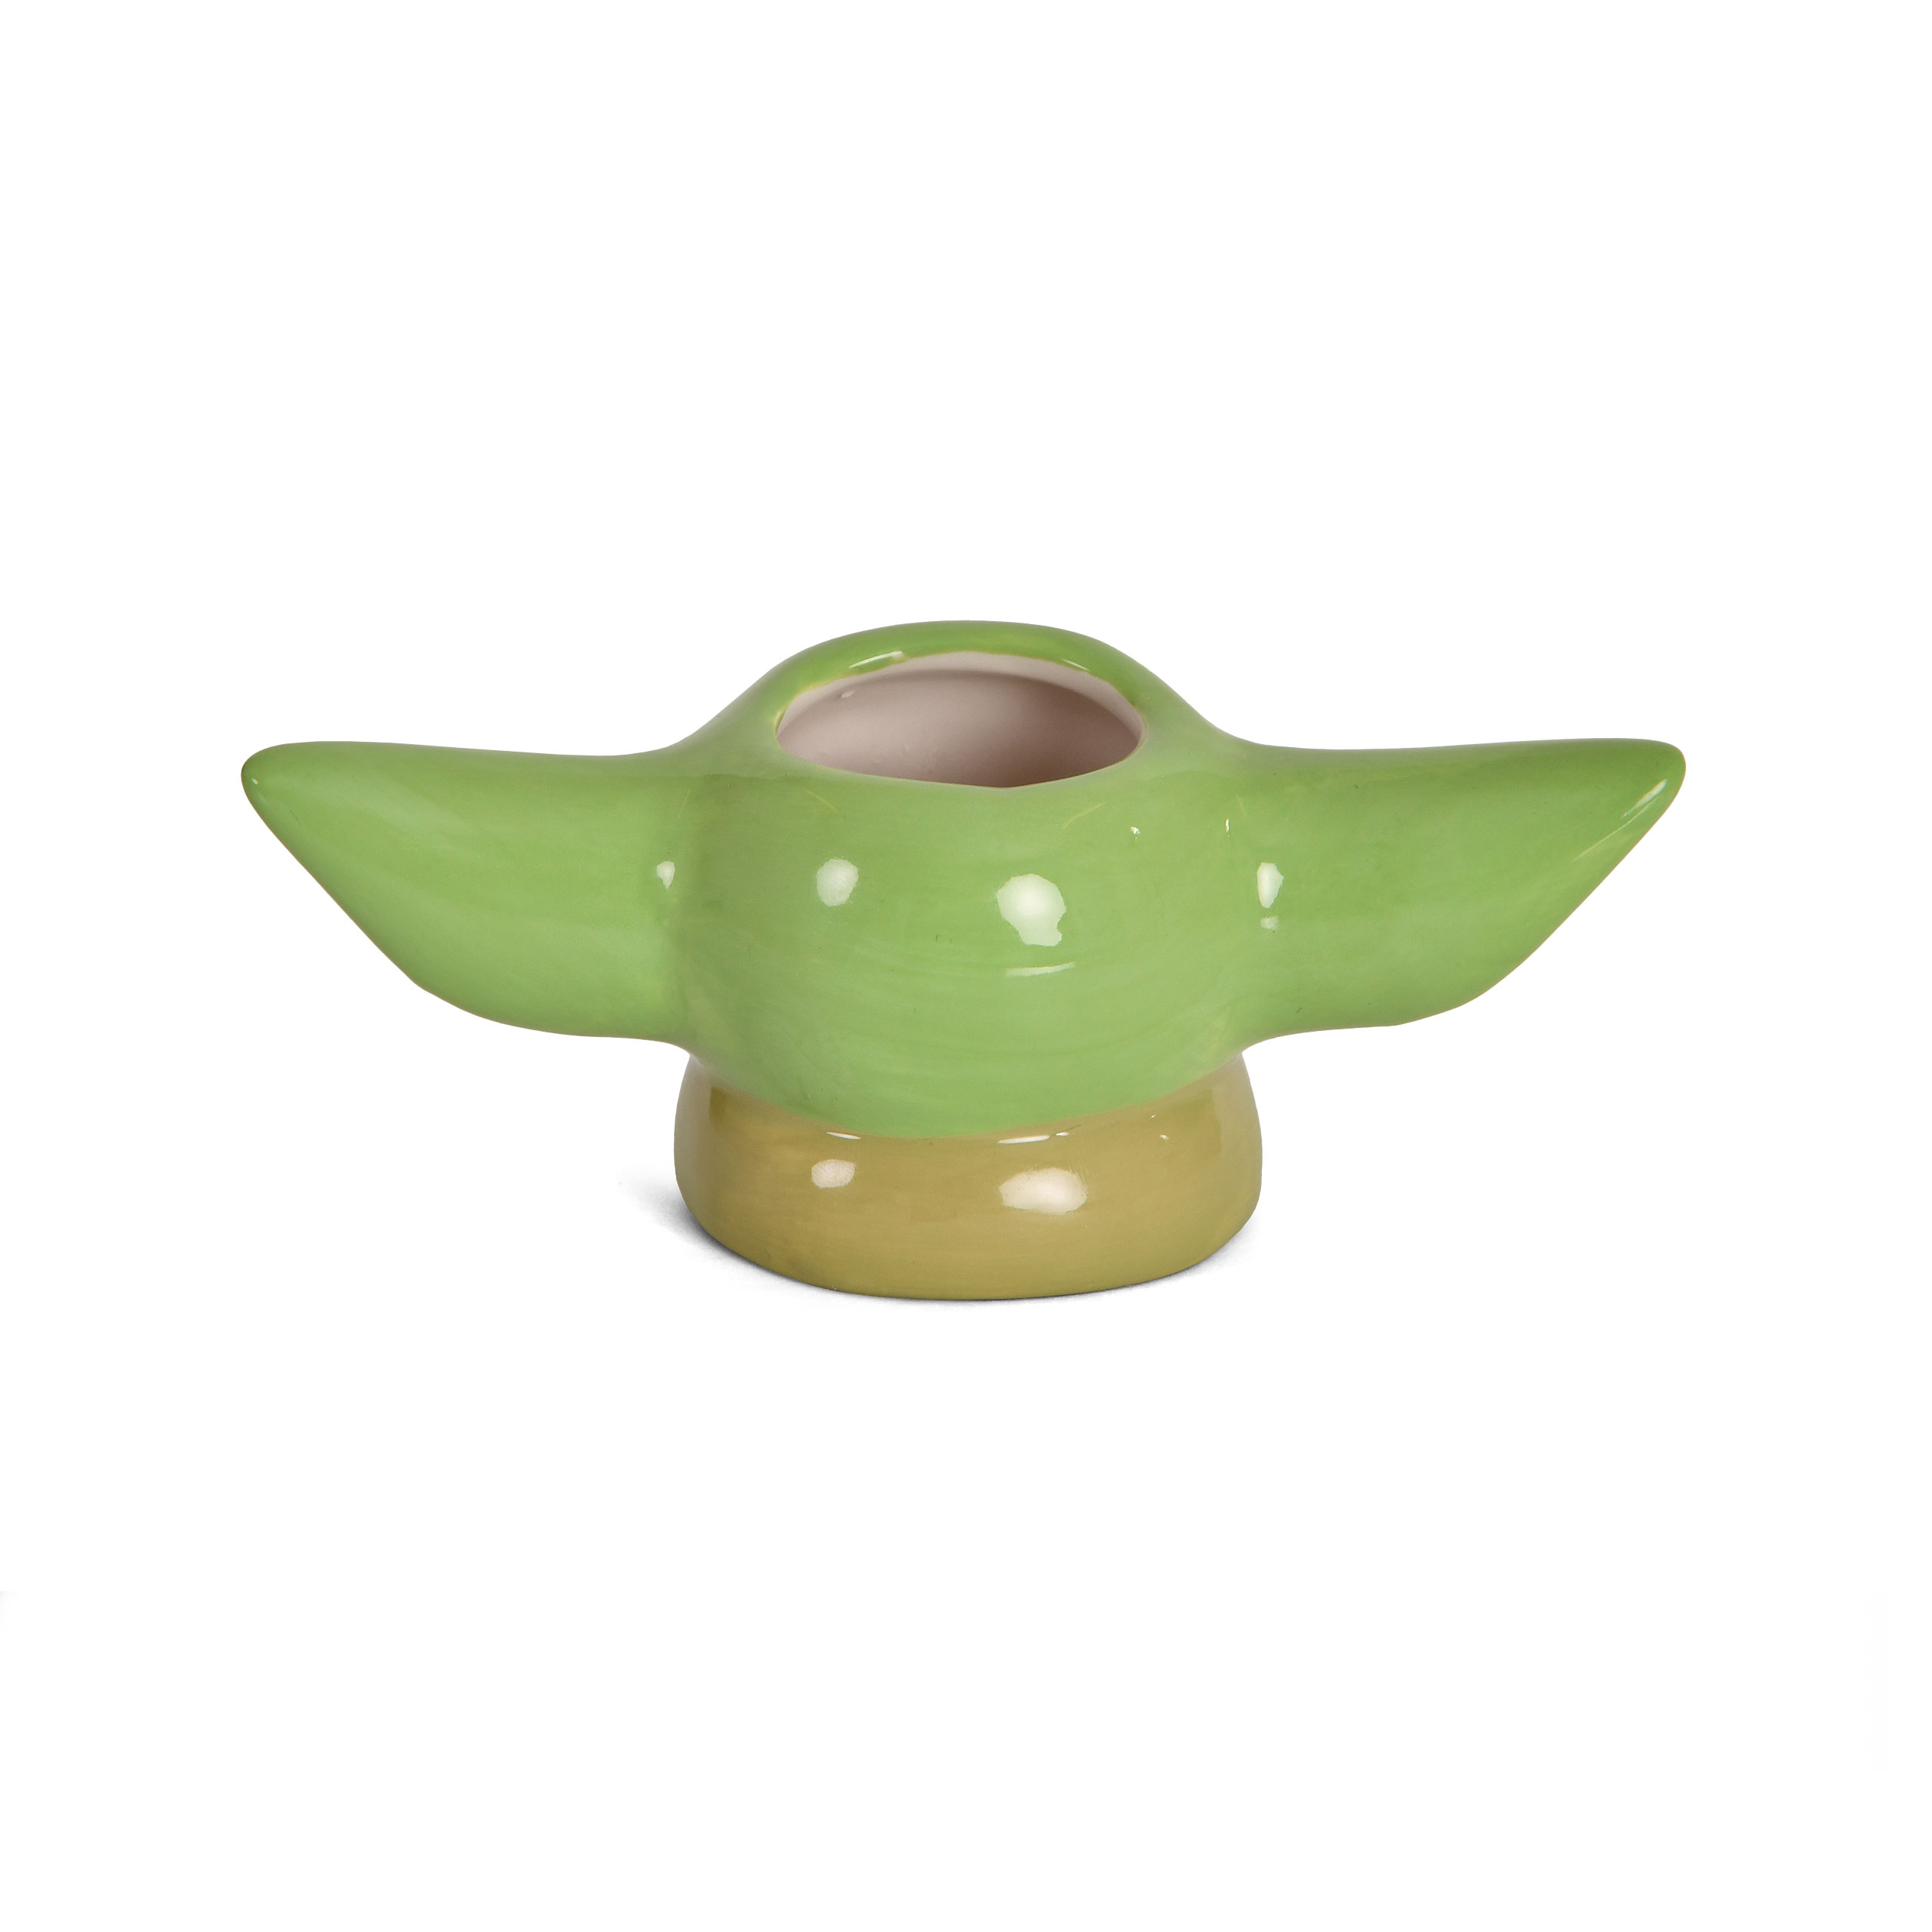 Grogu 3D Espresso Tasse - Star Wars The Mandalorian